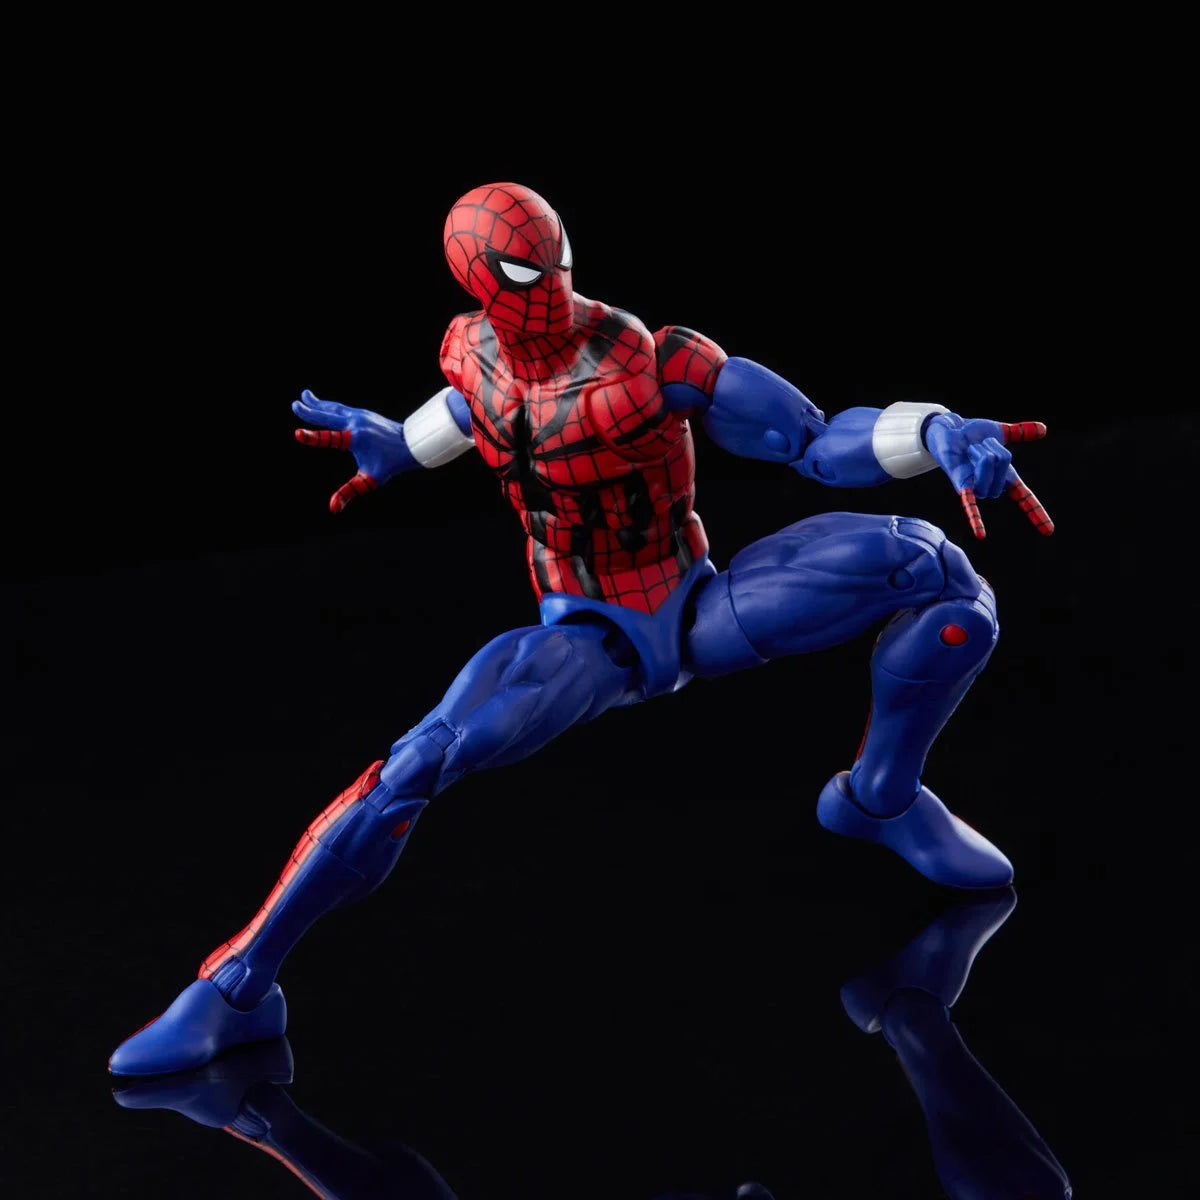 Retro Collection - Spider-Man - Ben Reilly Spider-Man